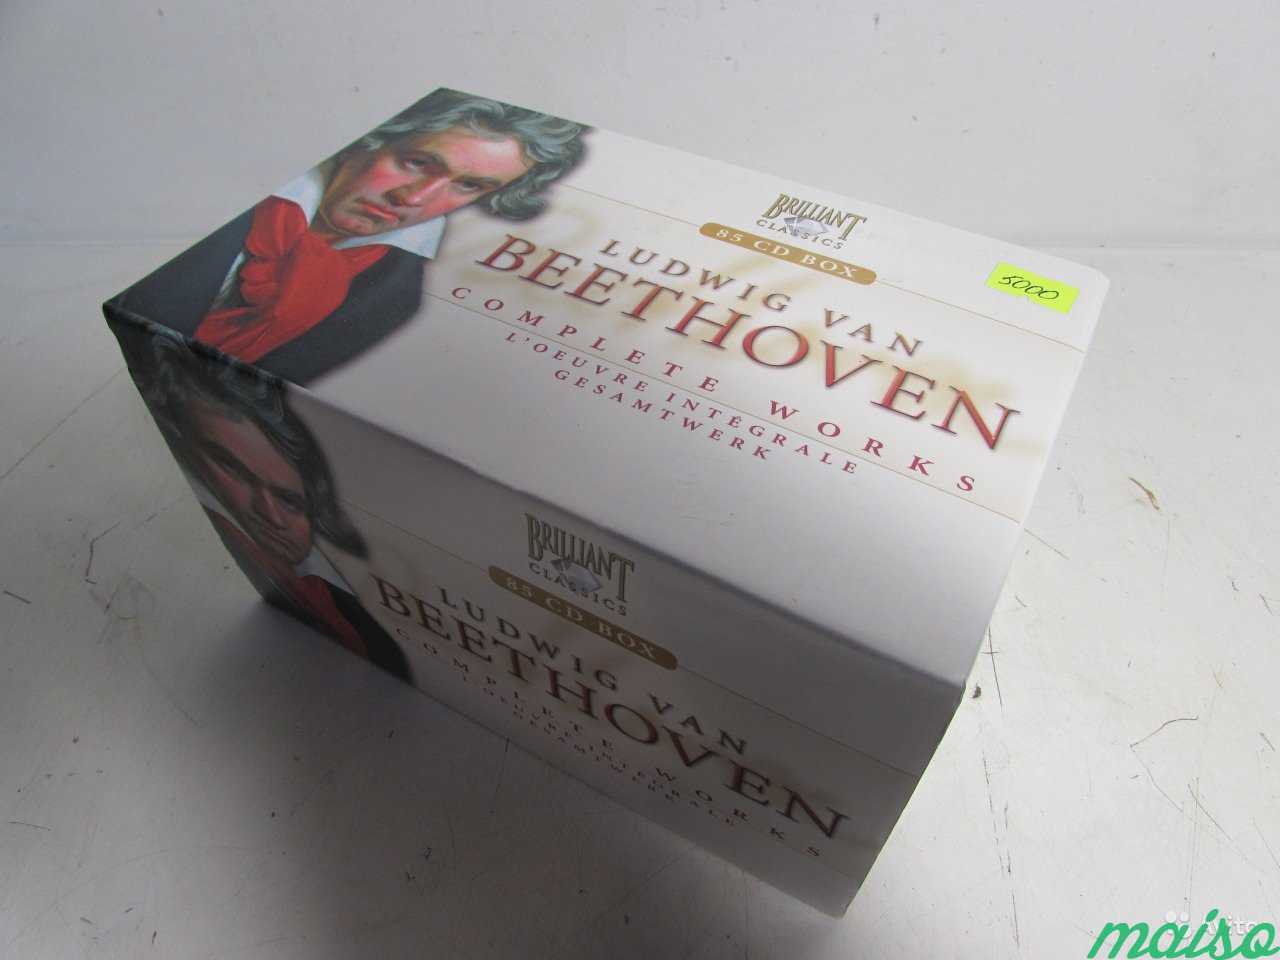 Beethoven Подарочный набор (85 CD-дисков) в Санкт-Петербурге. Фото 1